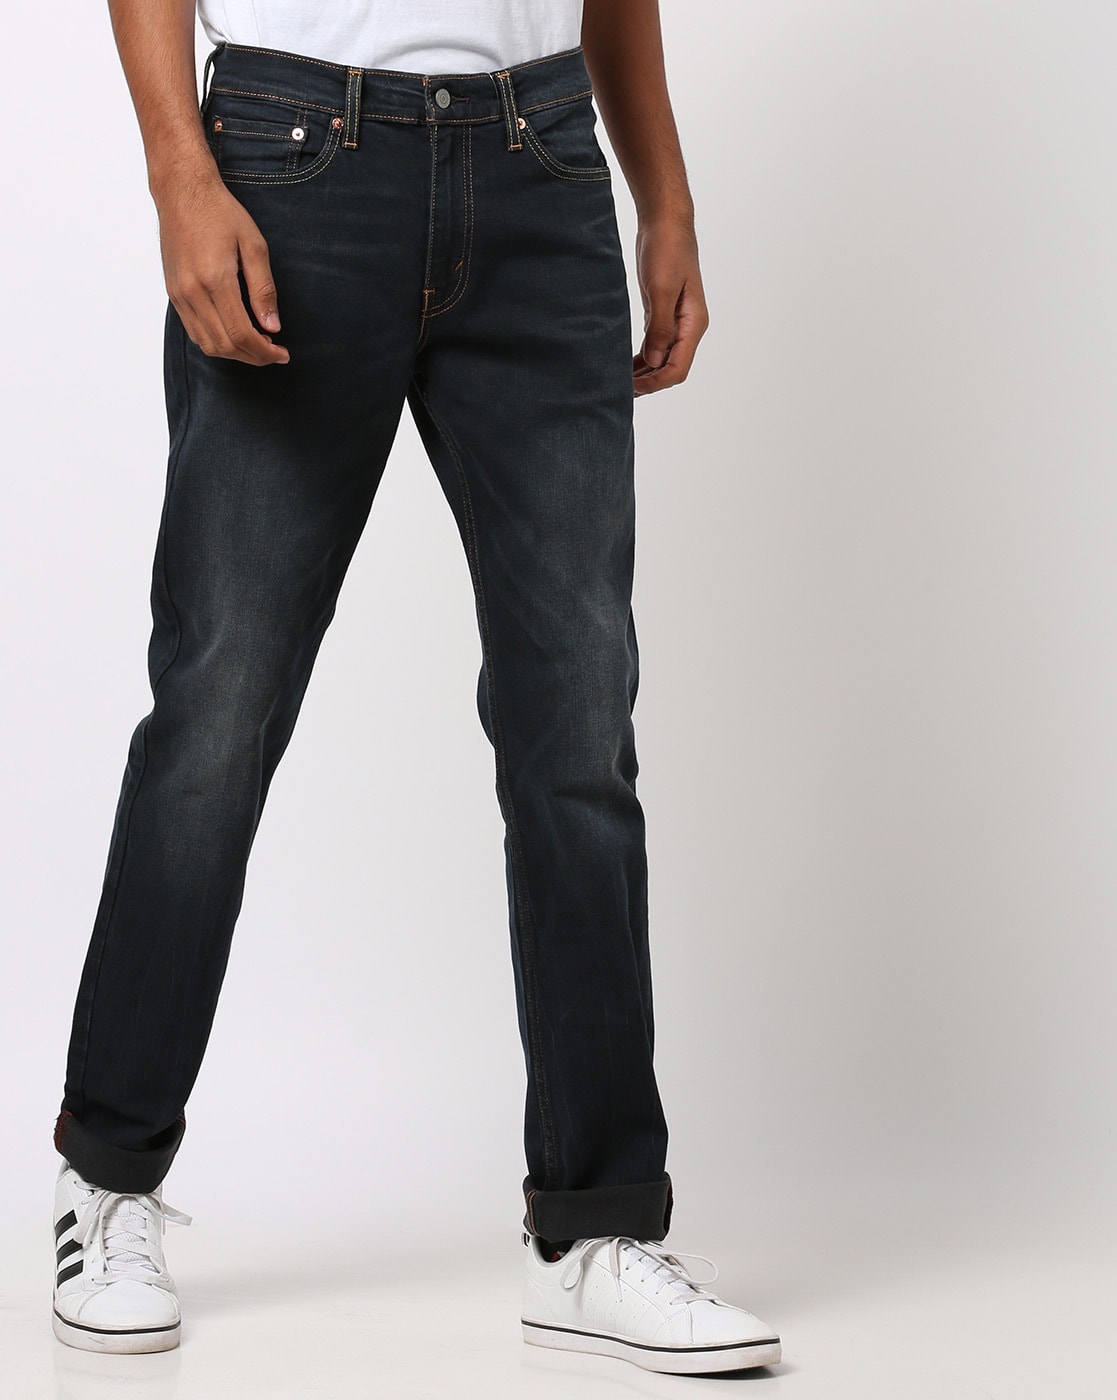 levis jeans performance